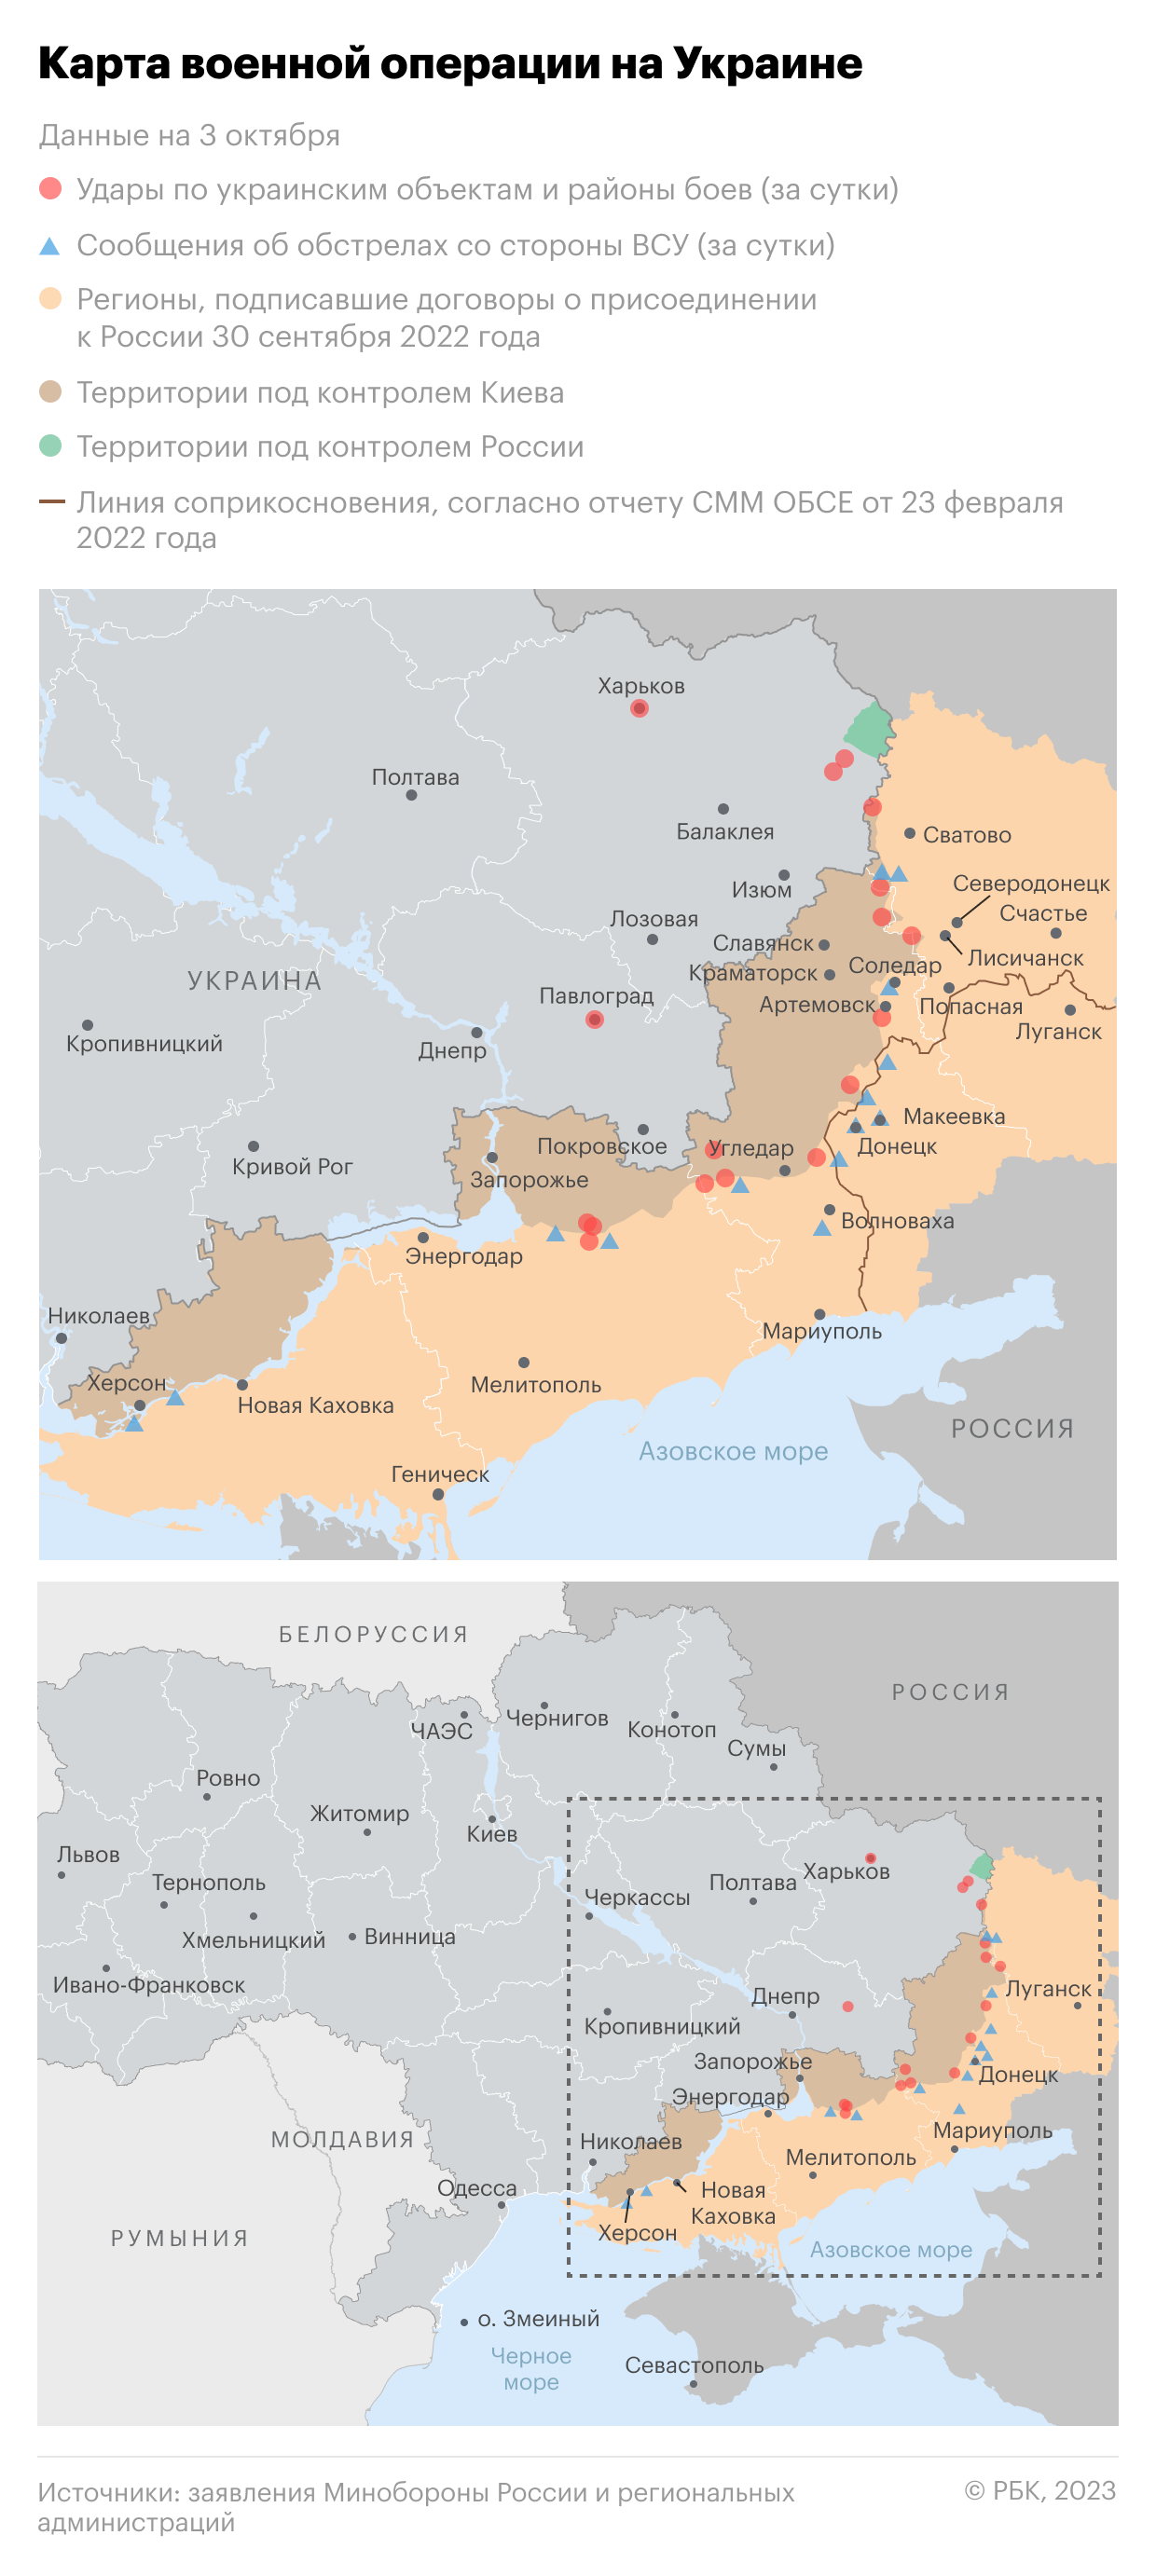 Военная операция на Украине. Карта на 3 октября